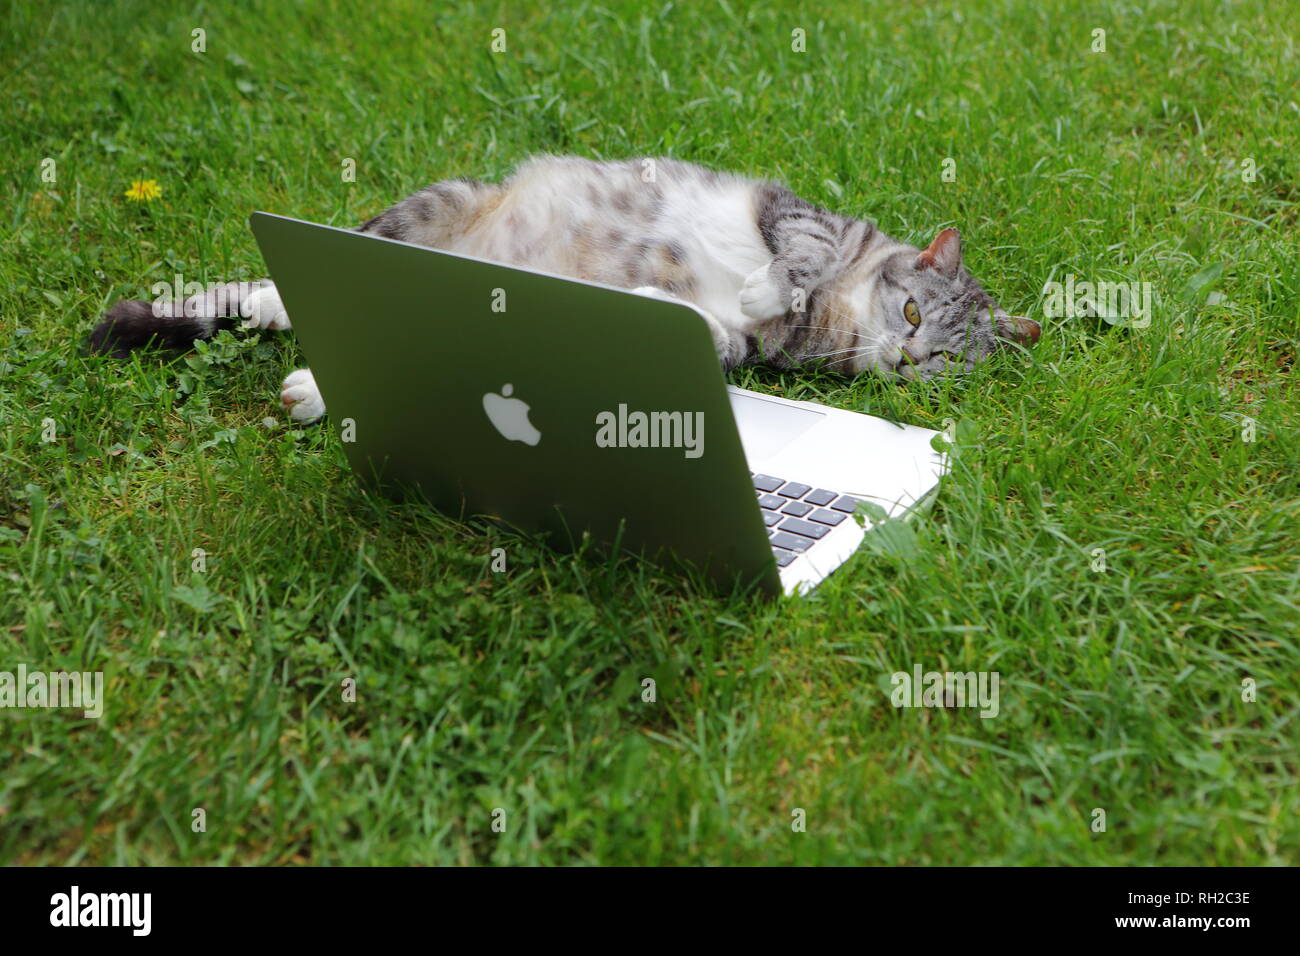 TEXEL, Pays-Bas - 5 juin 2018 : Cat et Apple Computer. Photo d'un MacBook Pro. Usage éditorial uniquement. Banque D'Images